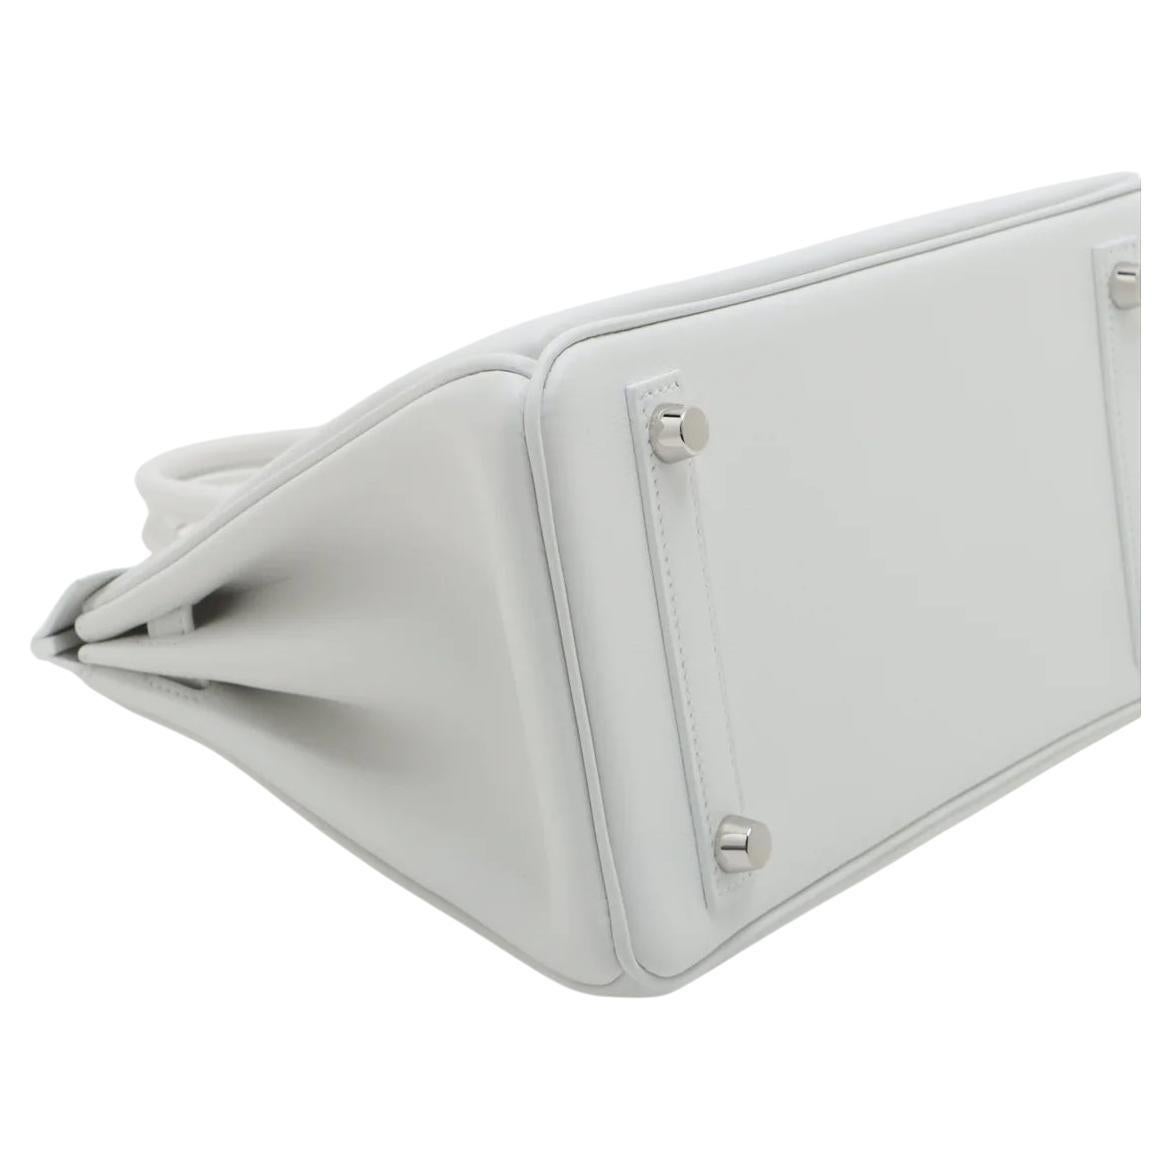 Hermes Birkin 25cm White Swift Leather Palladium Hardware For Sale 2